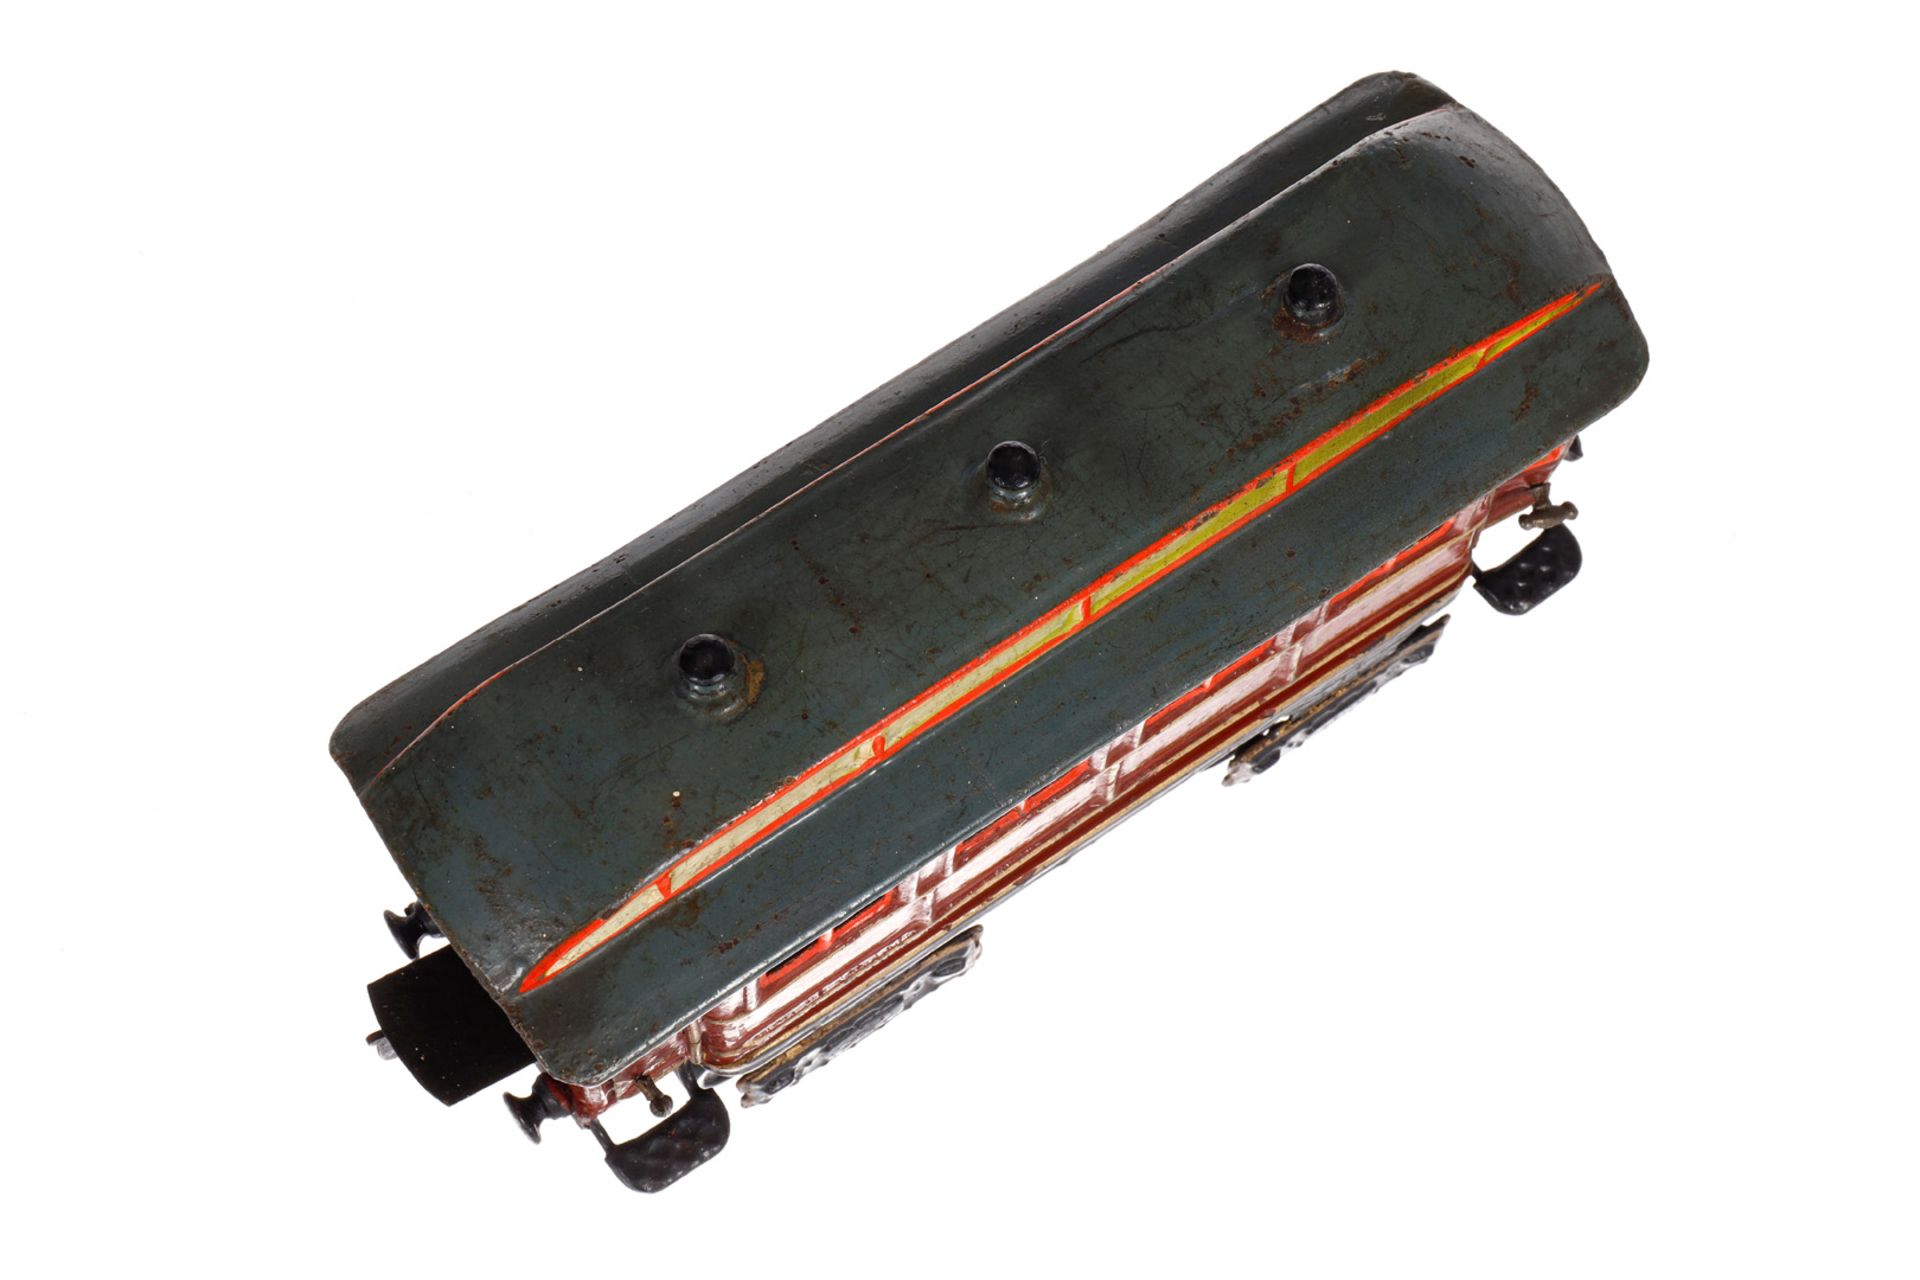 Märklin engl. Personenwagen ”Corridor-Car” 1841 MR, Spur 0, uralt, HL, mit Inneneinrichtung und 4 - Bild 4 aus 6